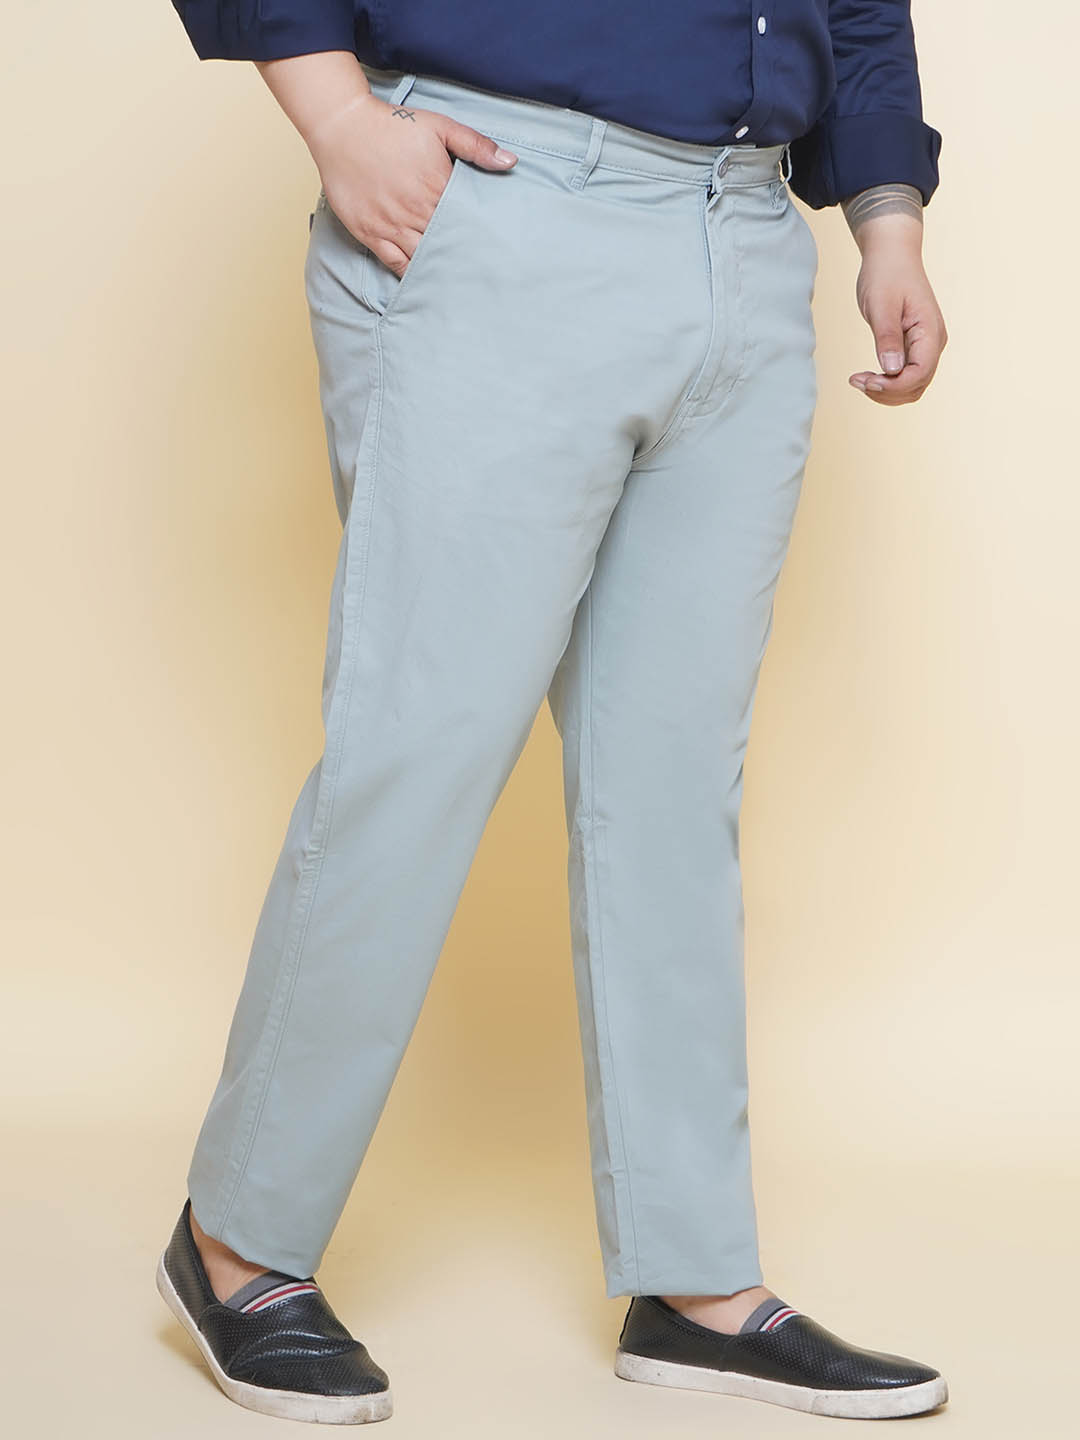 bottomwear/trousers/JPTR21017/jptr21017-3.jpg